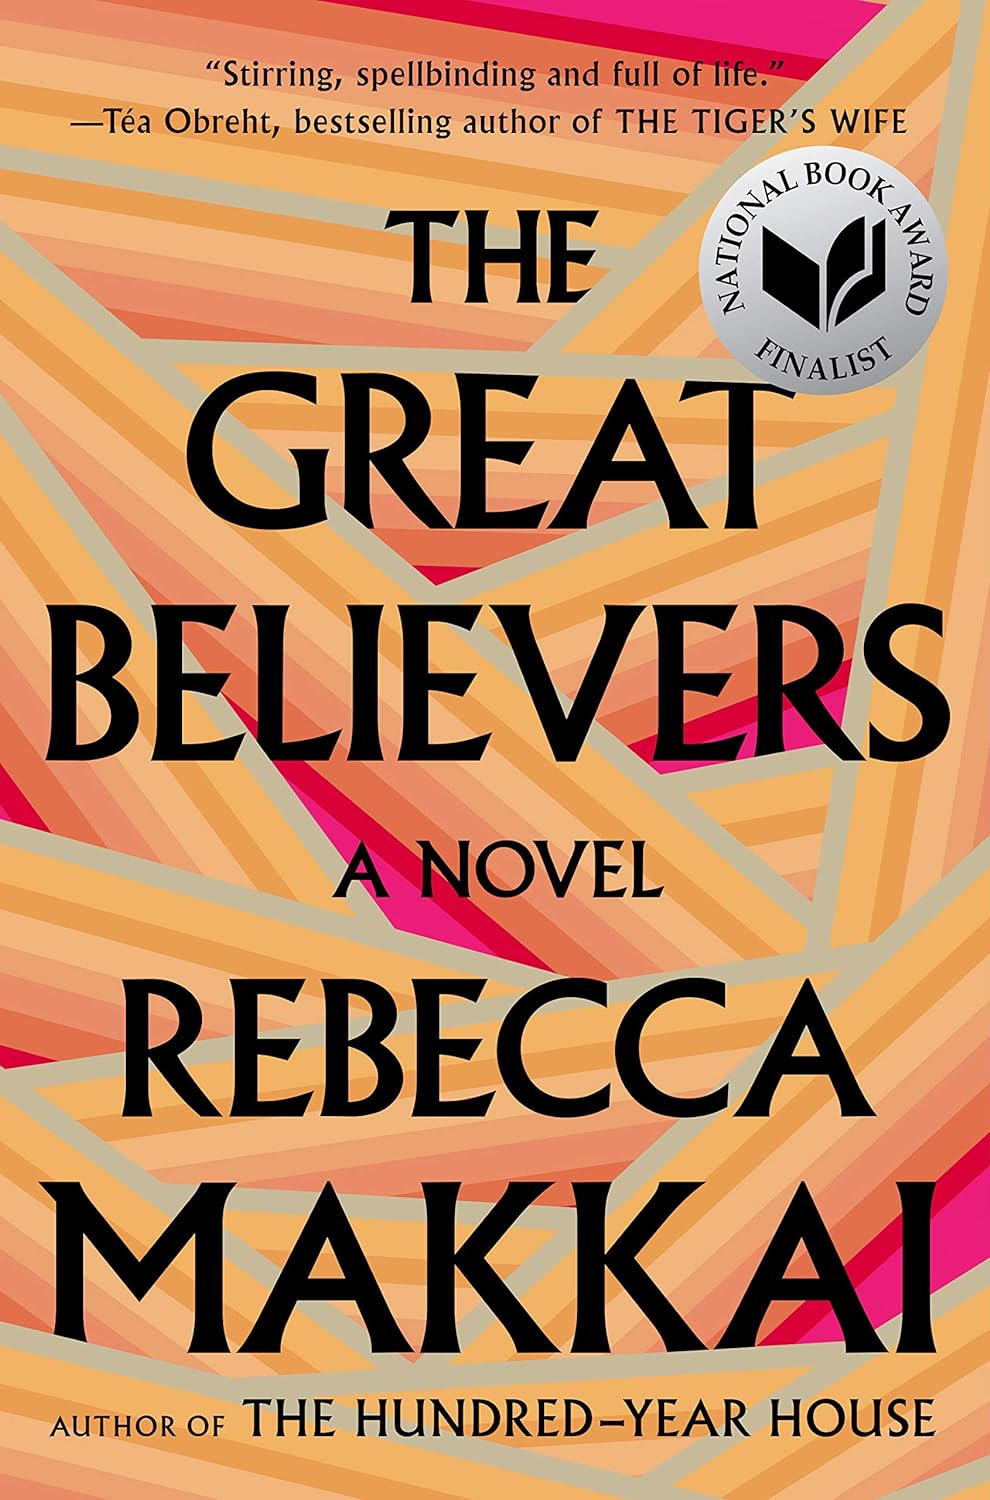 copertina del romanzo the great believers Rebecca Makkai, scritta nera su fondo arancione gemoetrico.